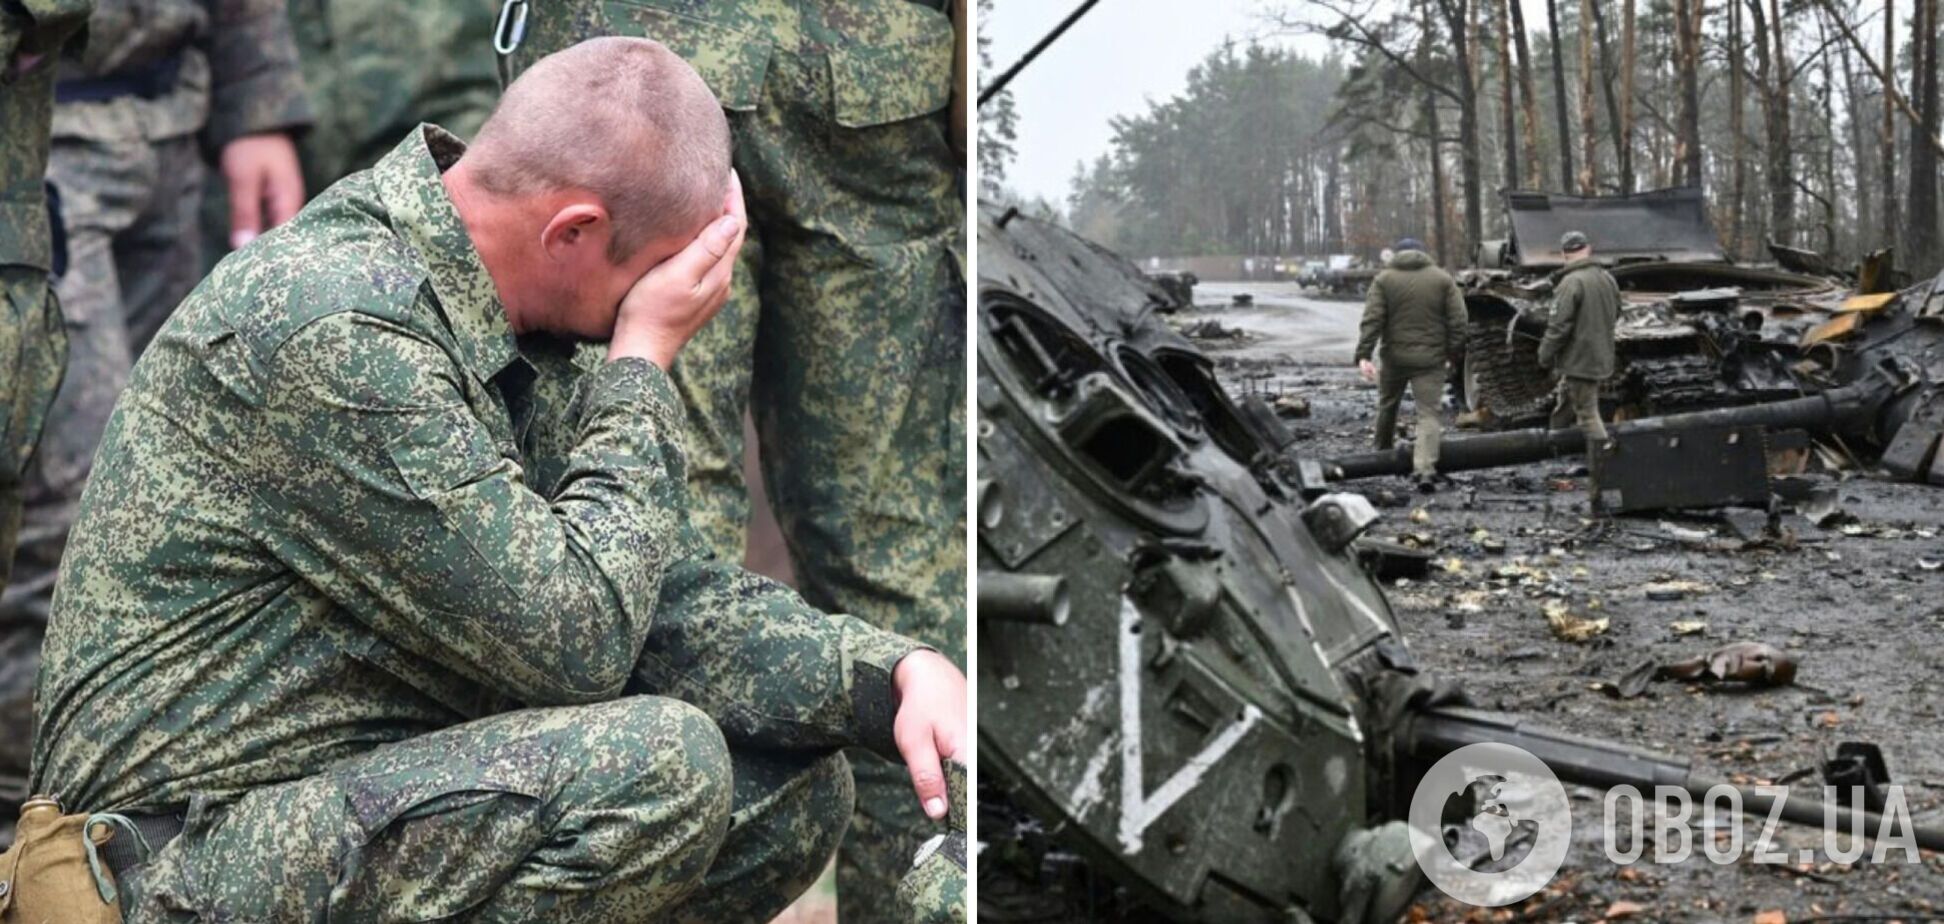 'Должны по щелчку пальцев умирать': оккупант рассказал о спецотрядах, которые РФ бросает на верную смерть в Украине. Перехват